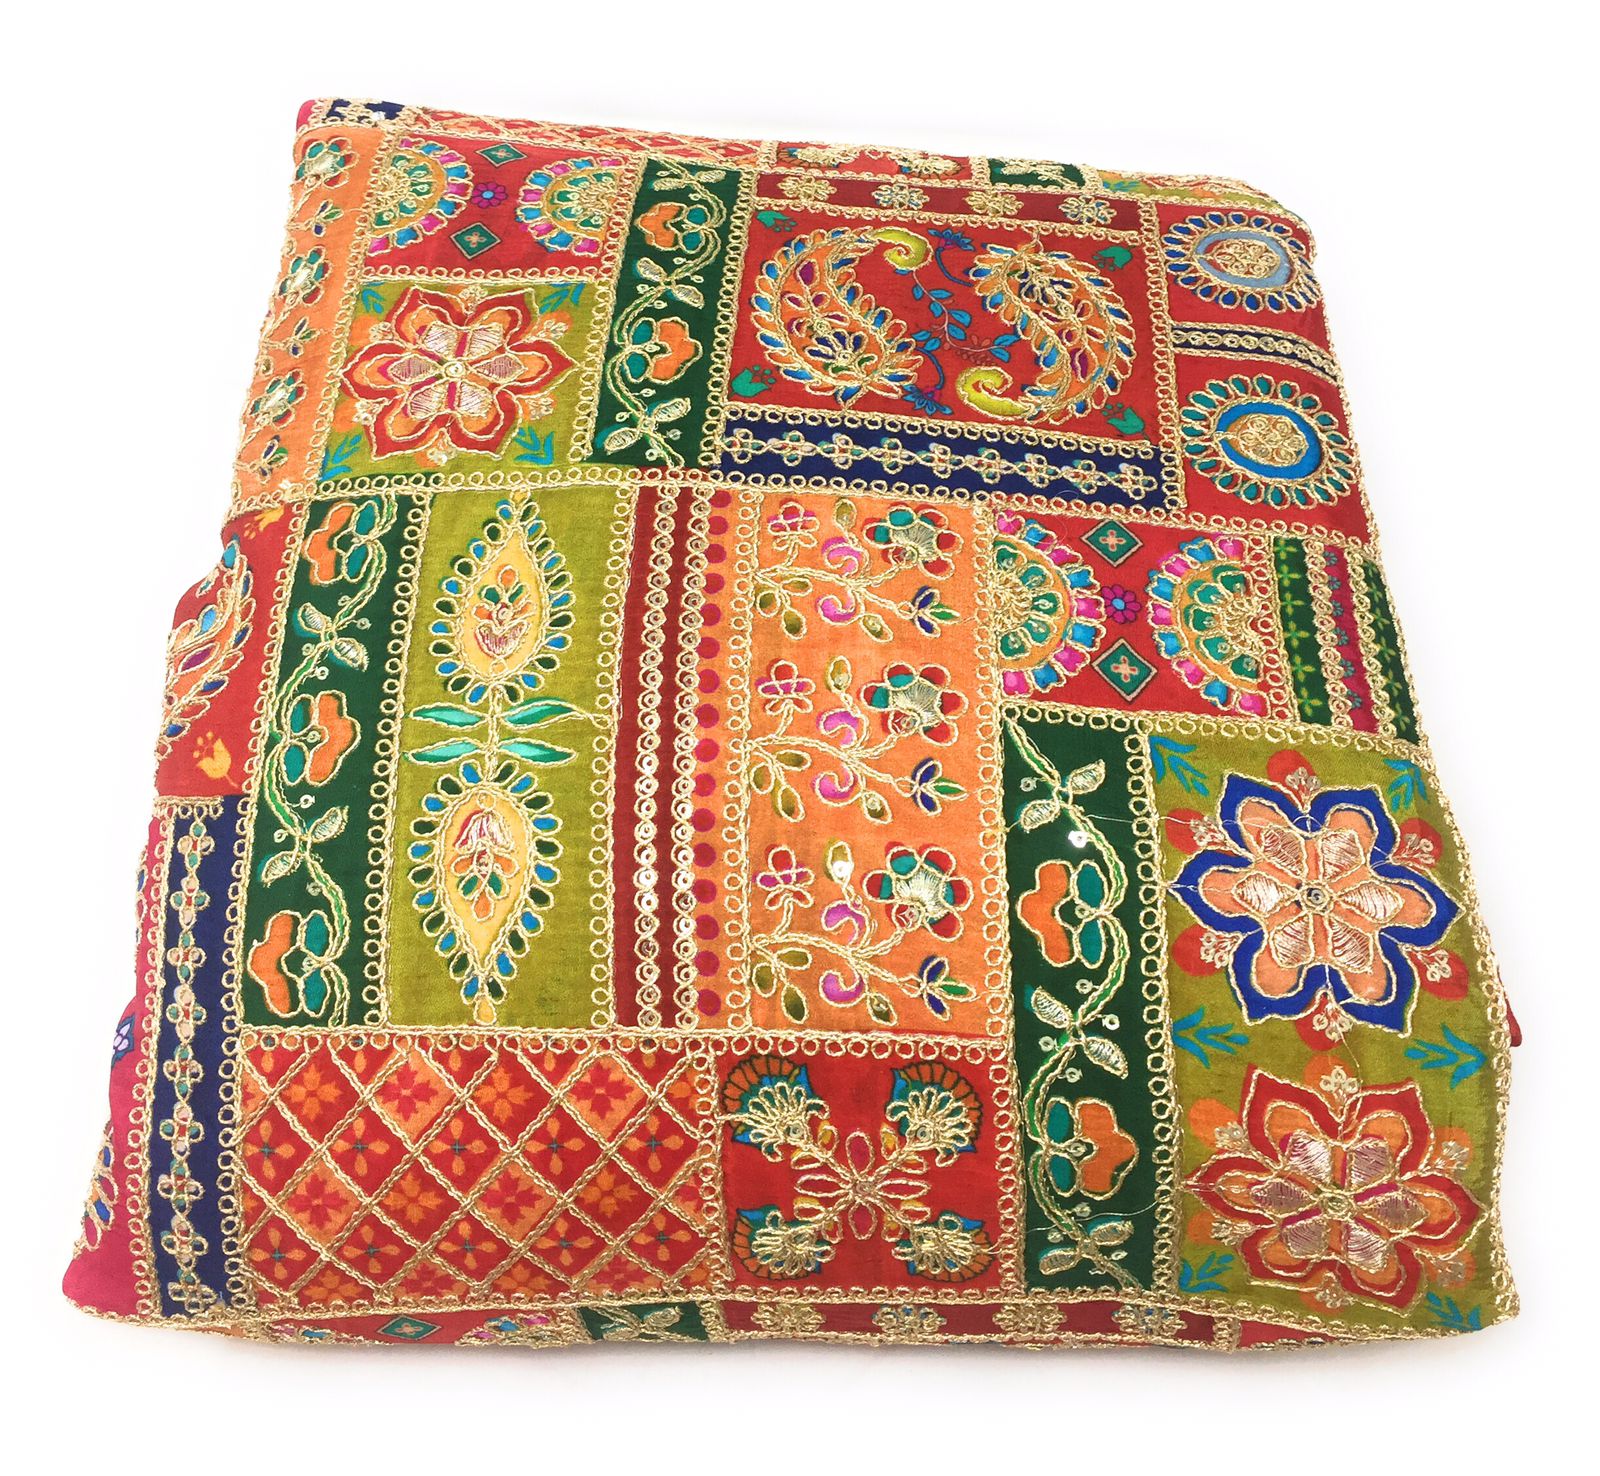 Latest lehenga Blouse design| Boutique style lehenga fabric| Latest  Shekhawati lehanga online oder| - YouTube